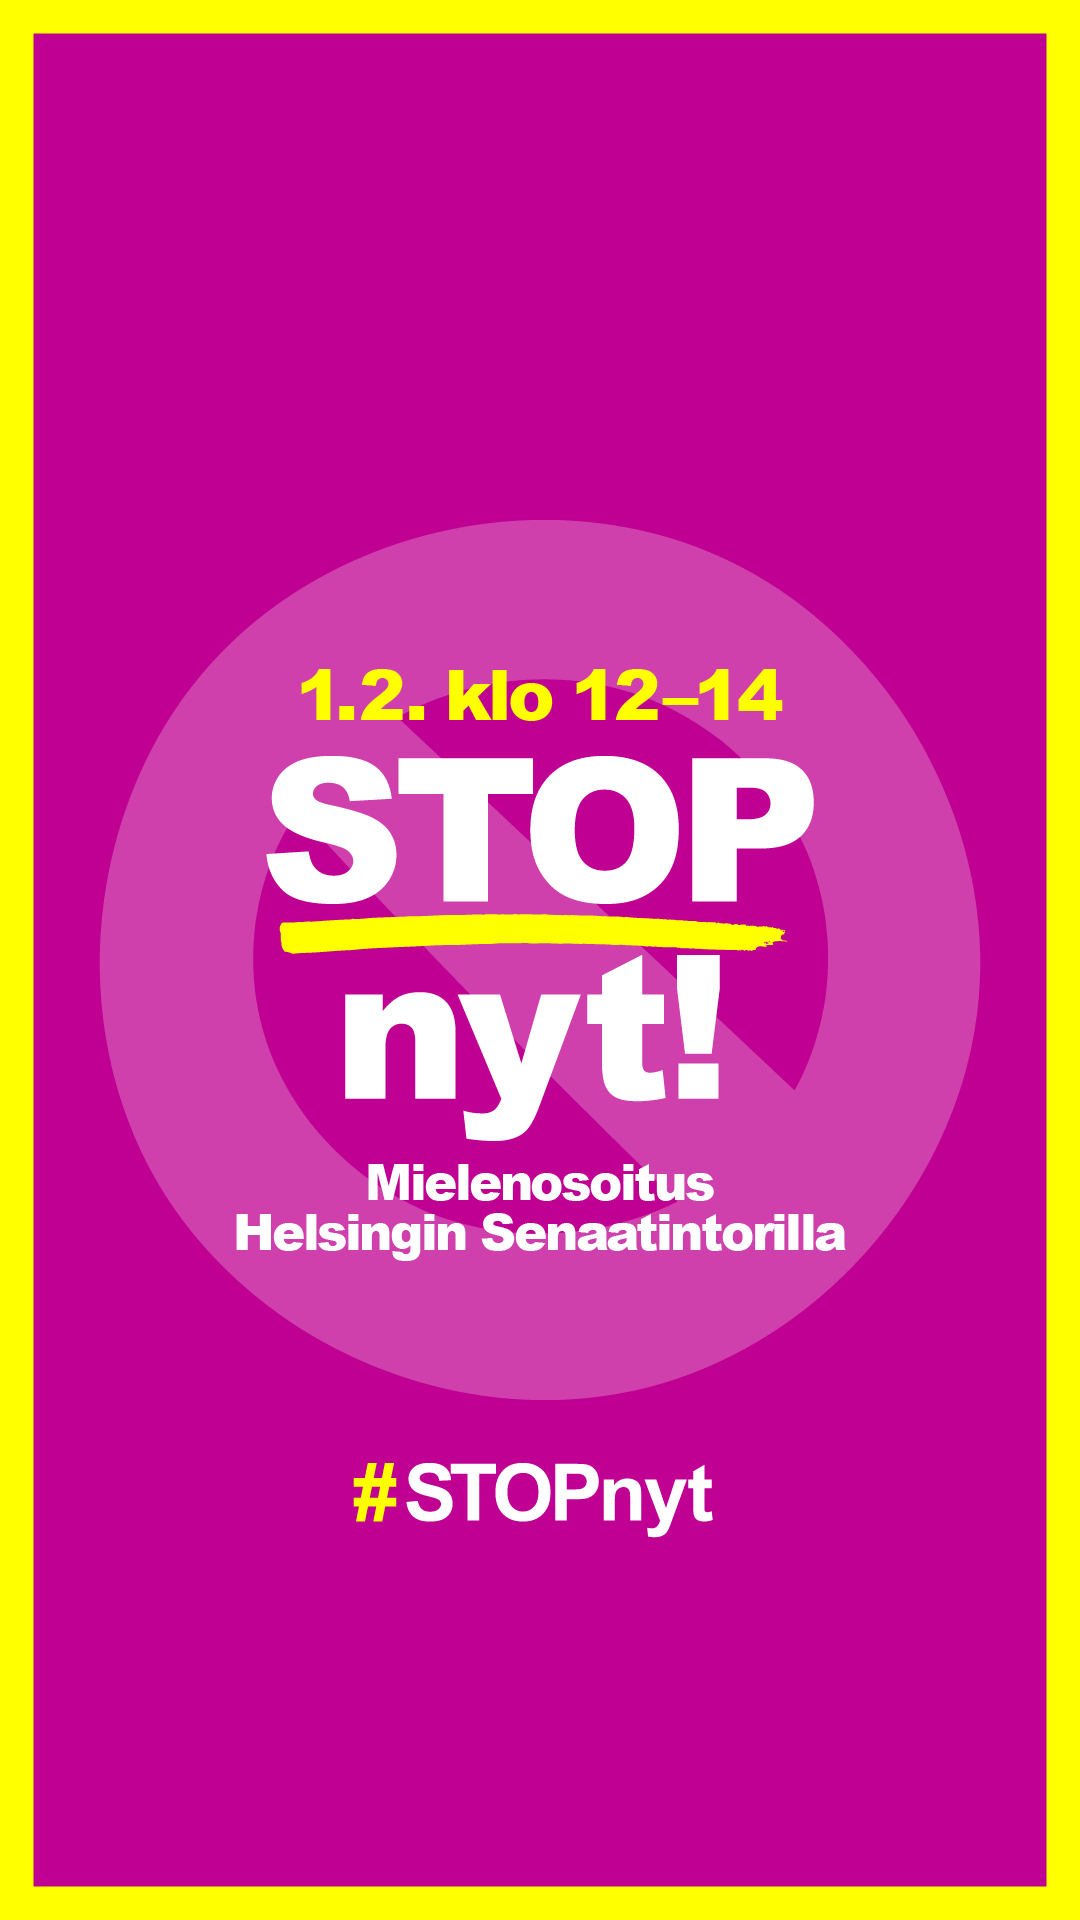 Magentalla taustalla teksti STOP nyt! Mielenosoitus Helsingin Senaatintorilla ja alla tunniste #STOPnyt.